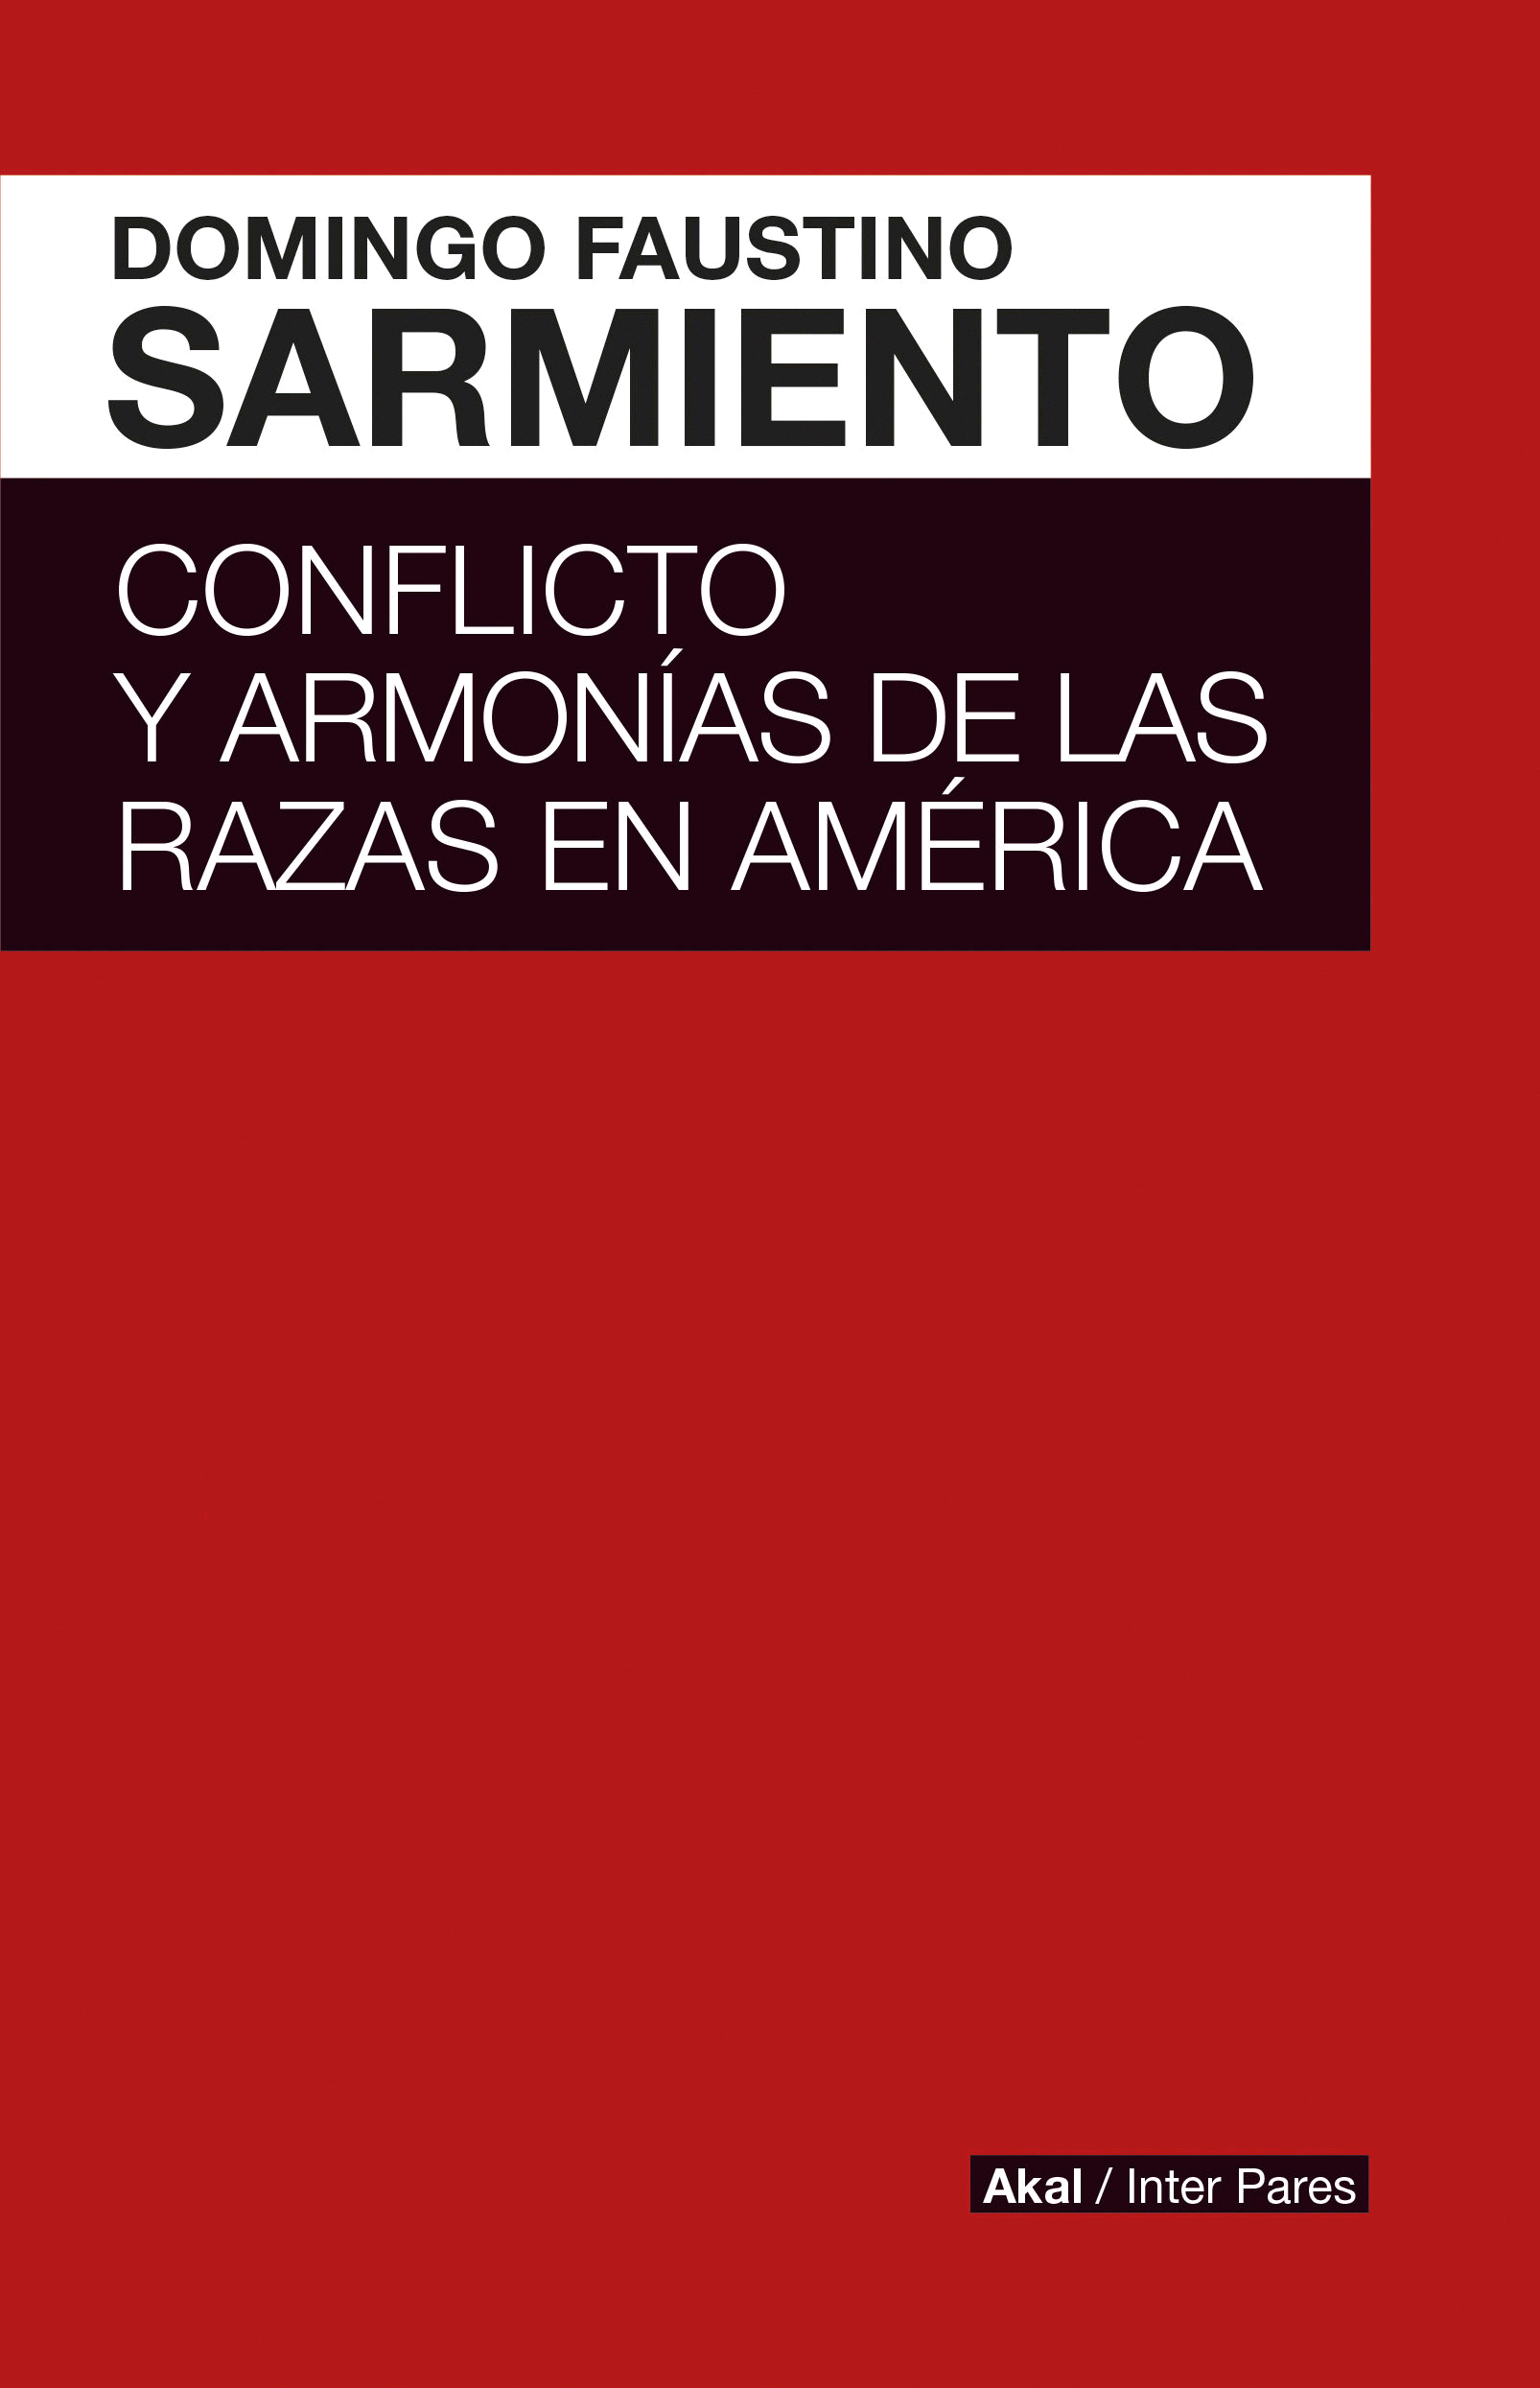 CONFLICTO Y ARMONIAS DE LAS RAZAS EN AMERICA